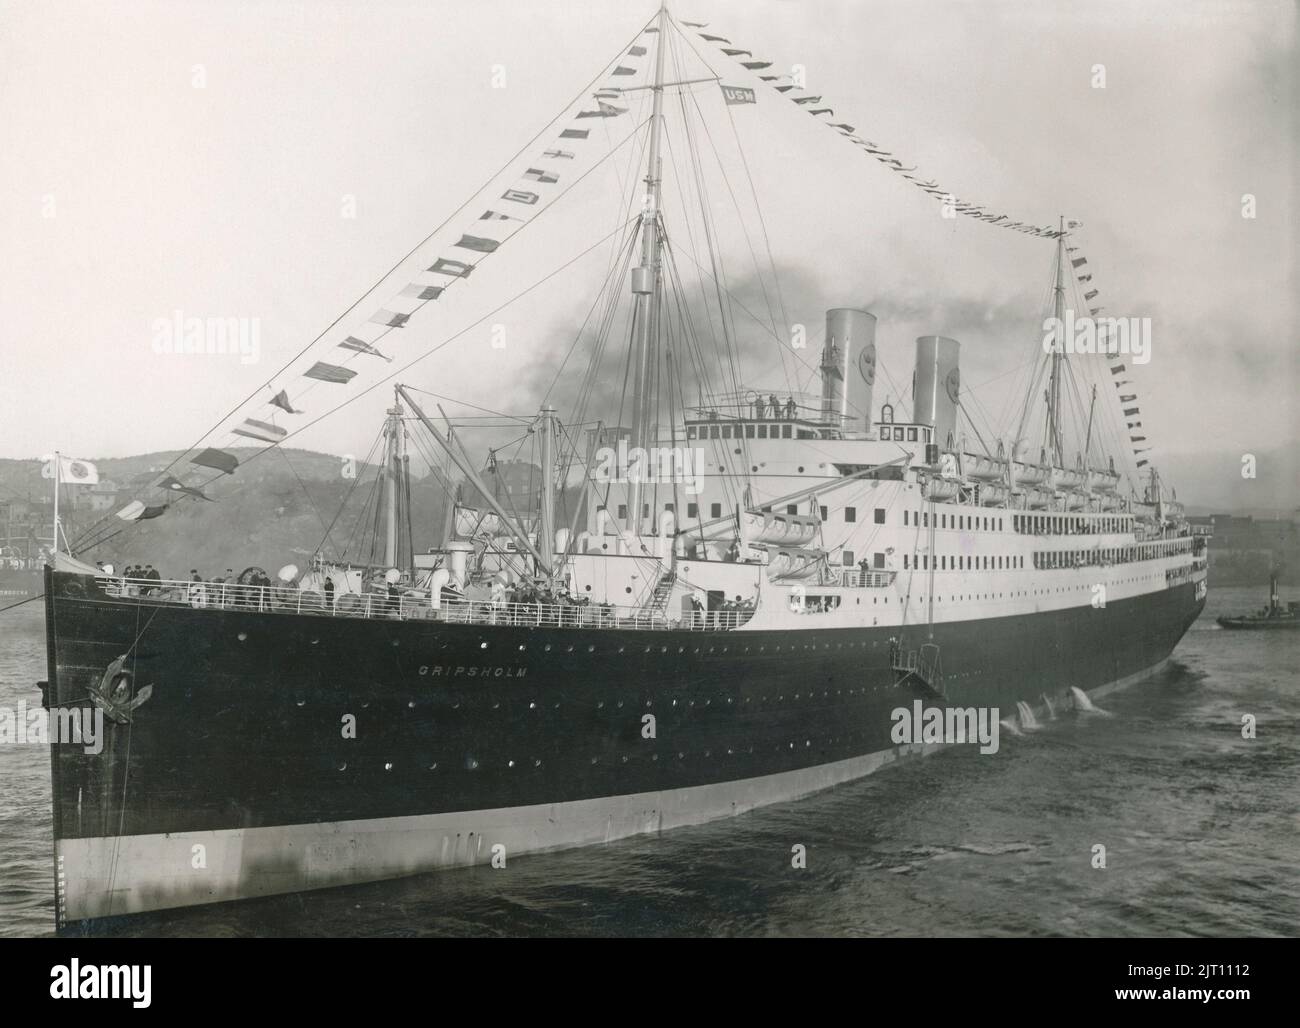 Das Jahr ist 1925. Das schwedisch-amerikanische Linienschiff M/S Gripsholm verlässt den Hafen von Göteborg auf ihrer Jungfernfahrt über den Atlantik nach New York. Das Schiff Gripsholm galt damals mit einer Länge von 168,5 Metern als eines der luxuriösesten Schiffe auf dem Atlantik. Die berühmten Menschen dieser Zeit reisten mit ihr. Stockfoto